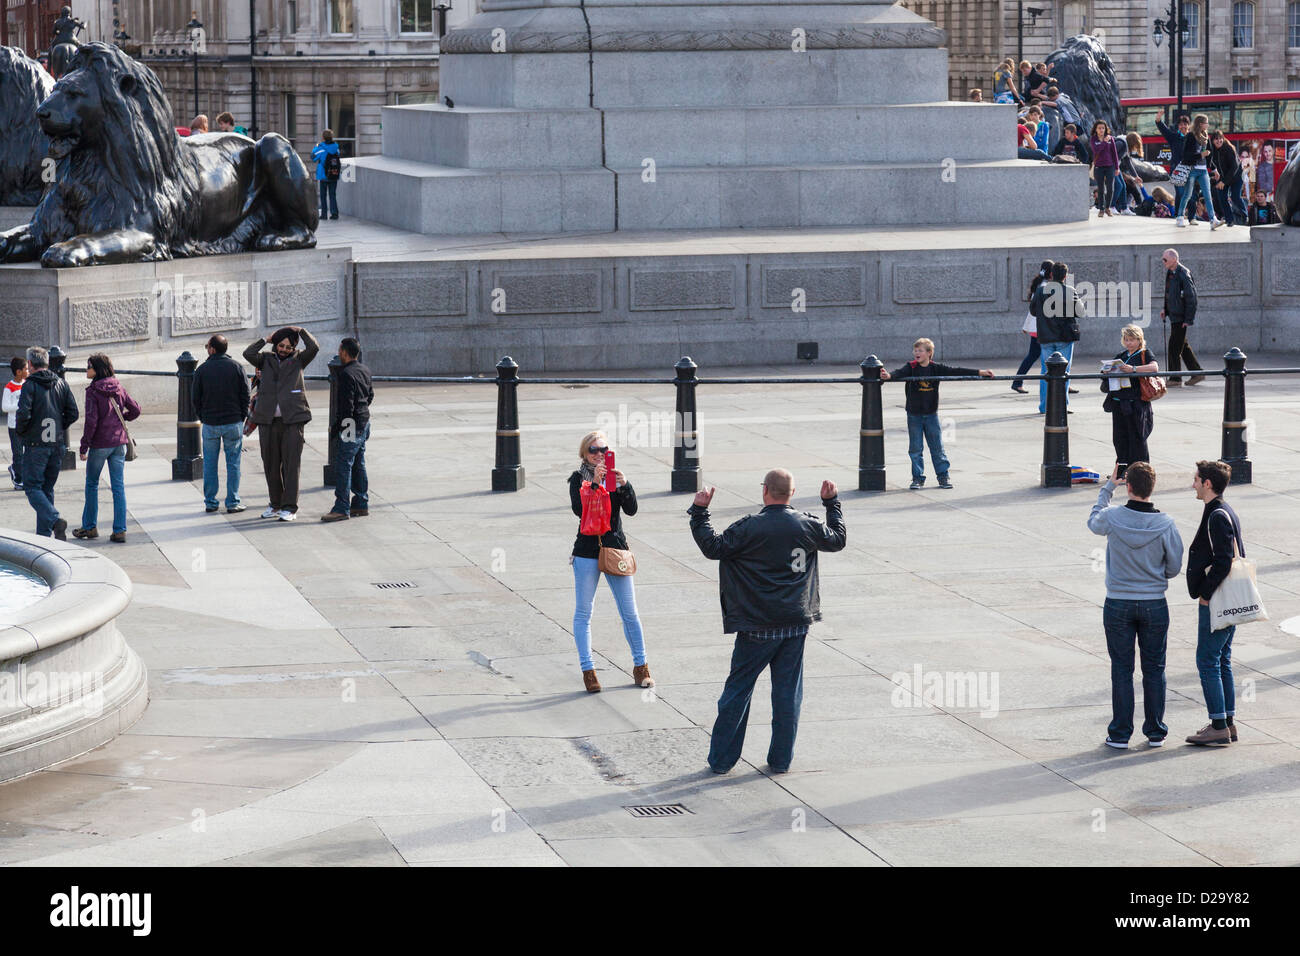 Touriste utilise son téléphone portable pour prendre une photo d'un homme à Trafalgar Square, Londres. Banque D'Images